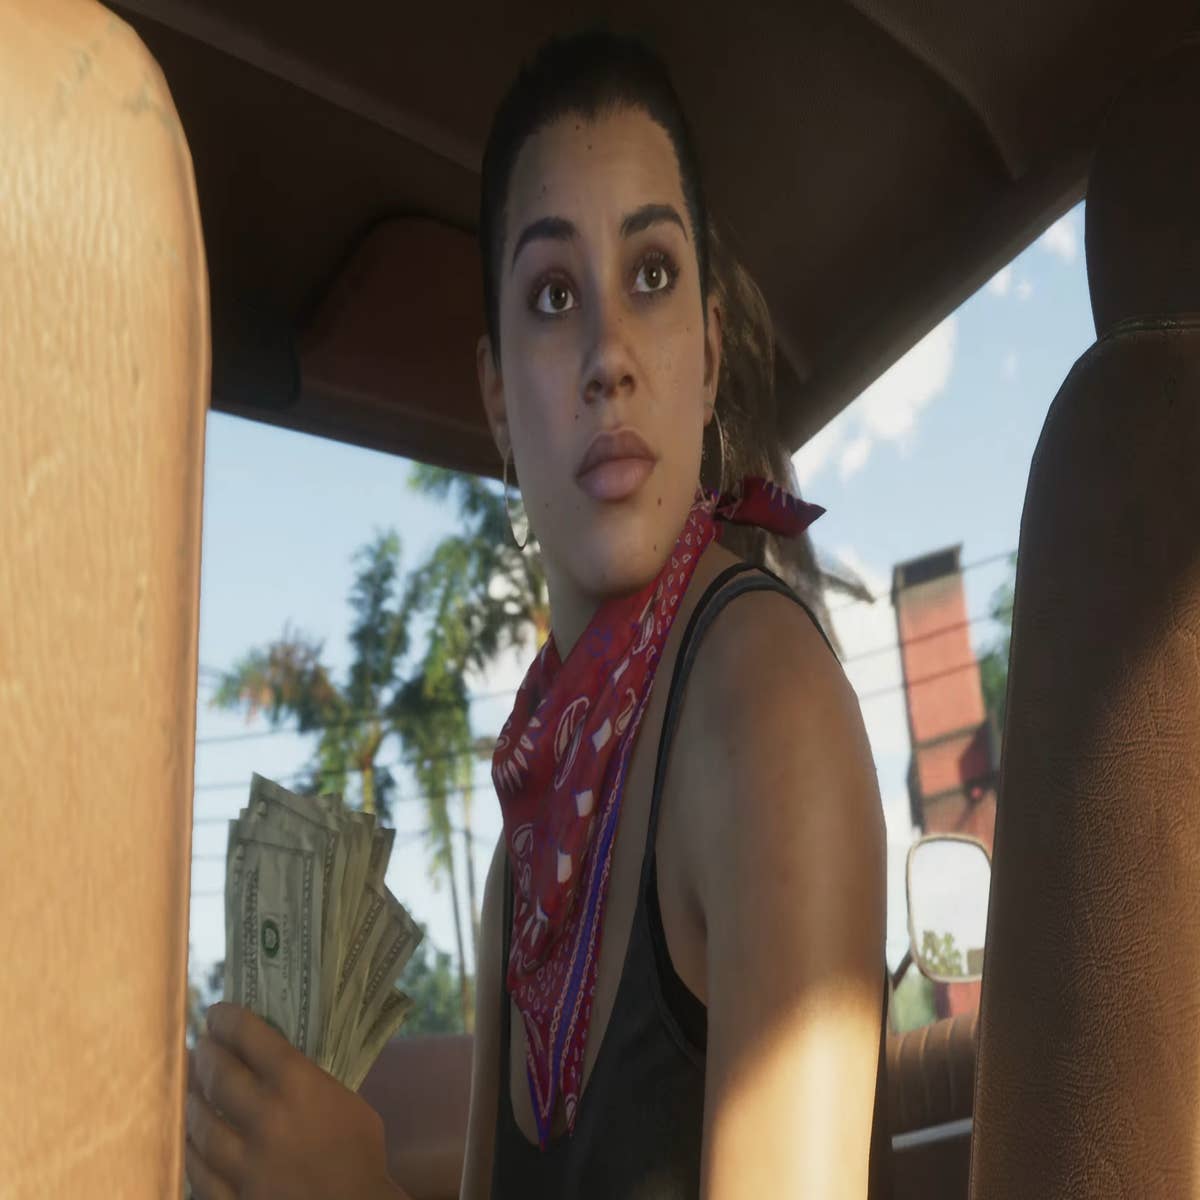 Breaking News: Grand Theft Auto VI Trailer Released!